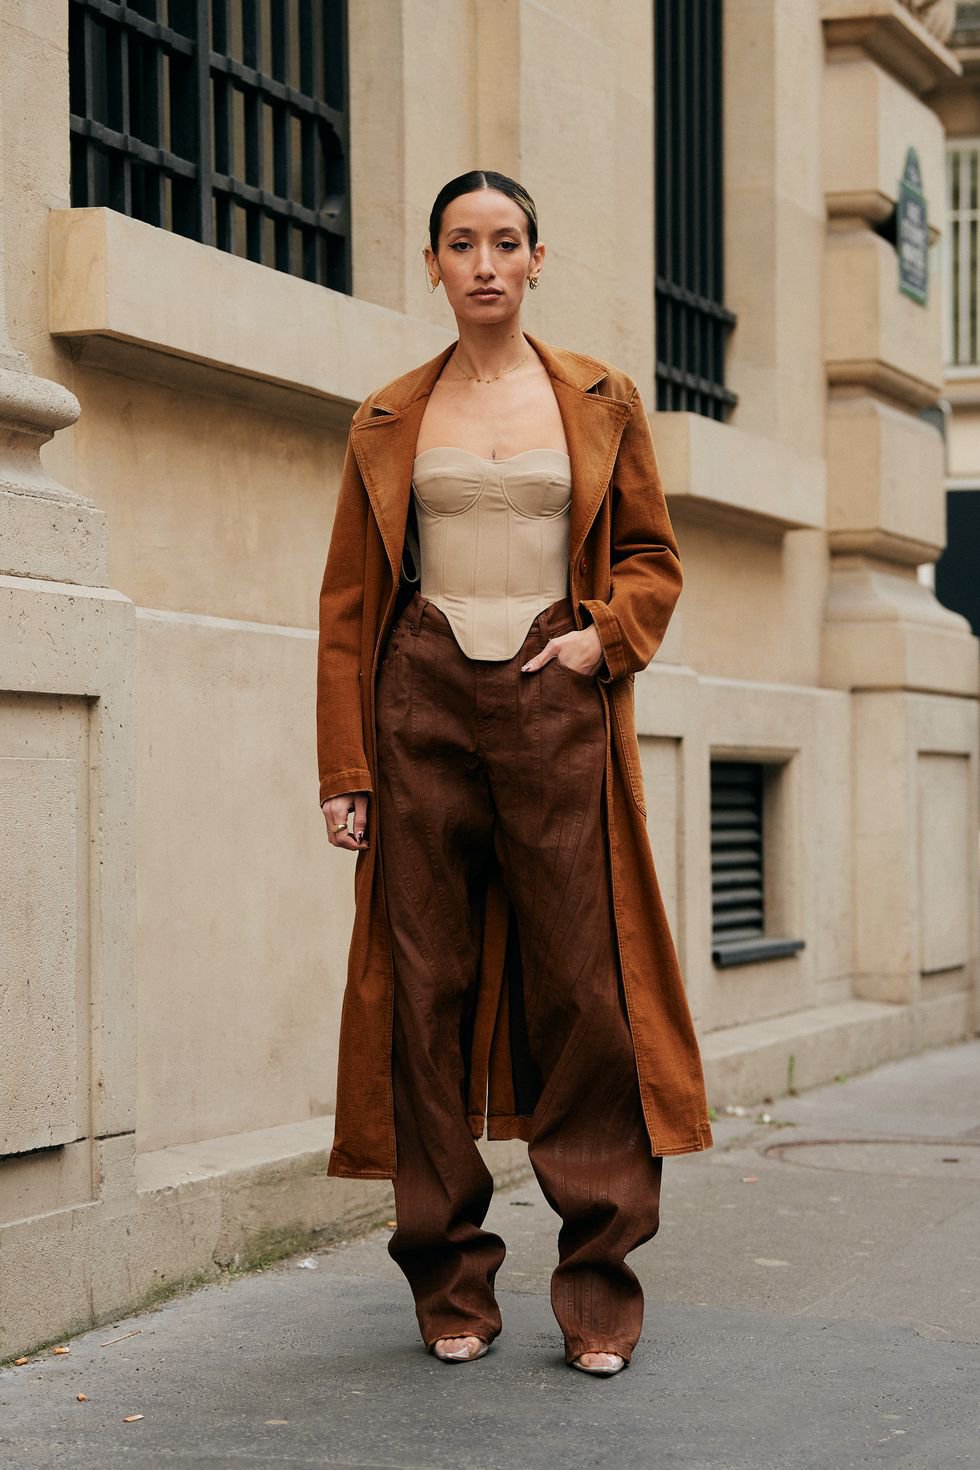 Thời trang 'phản giới tính' tại Paris Fashion Week 2022: Nam thích mặc váy, nữ diện áo da đinh tán - Ảnh 13